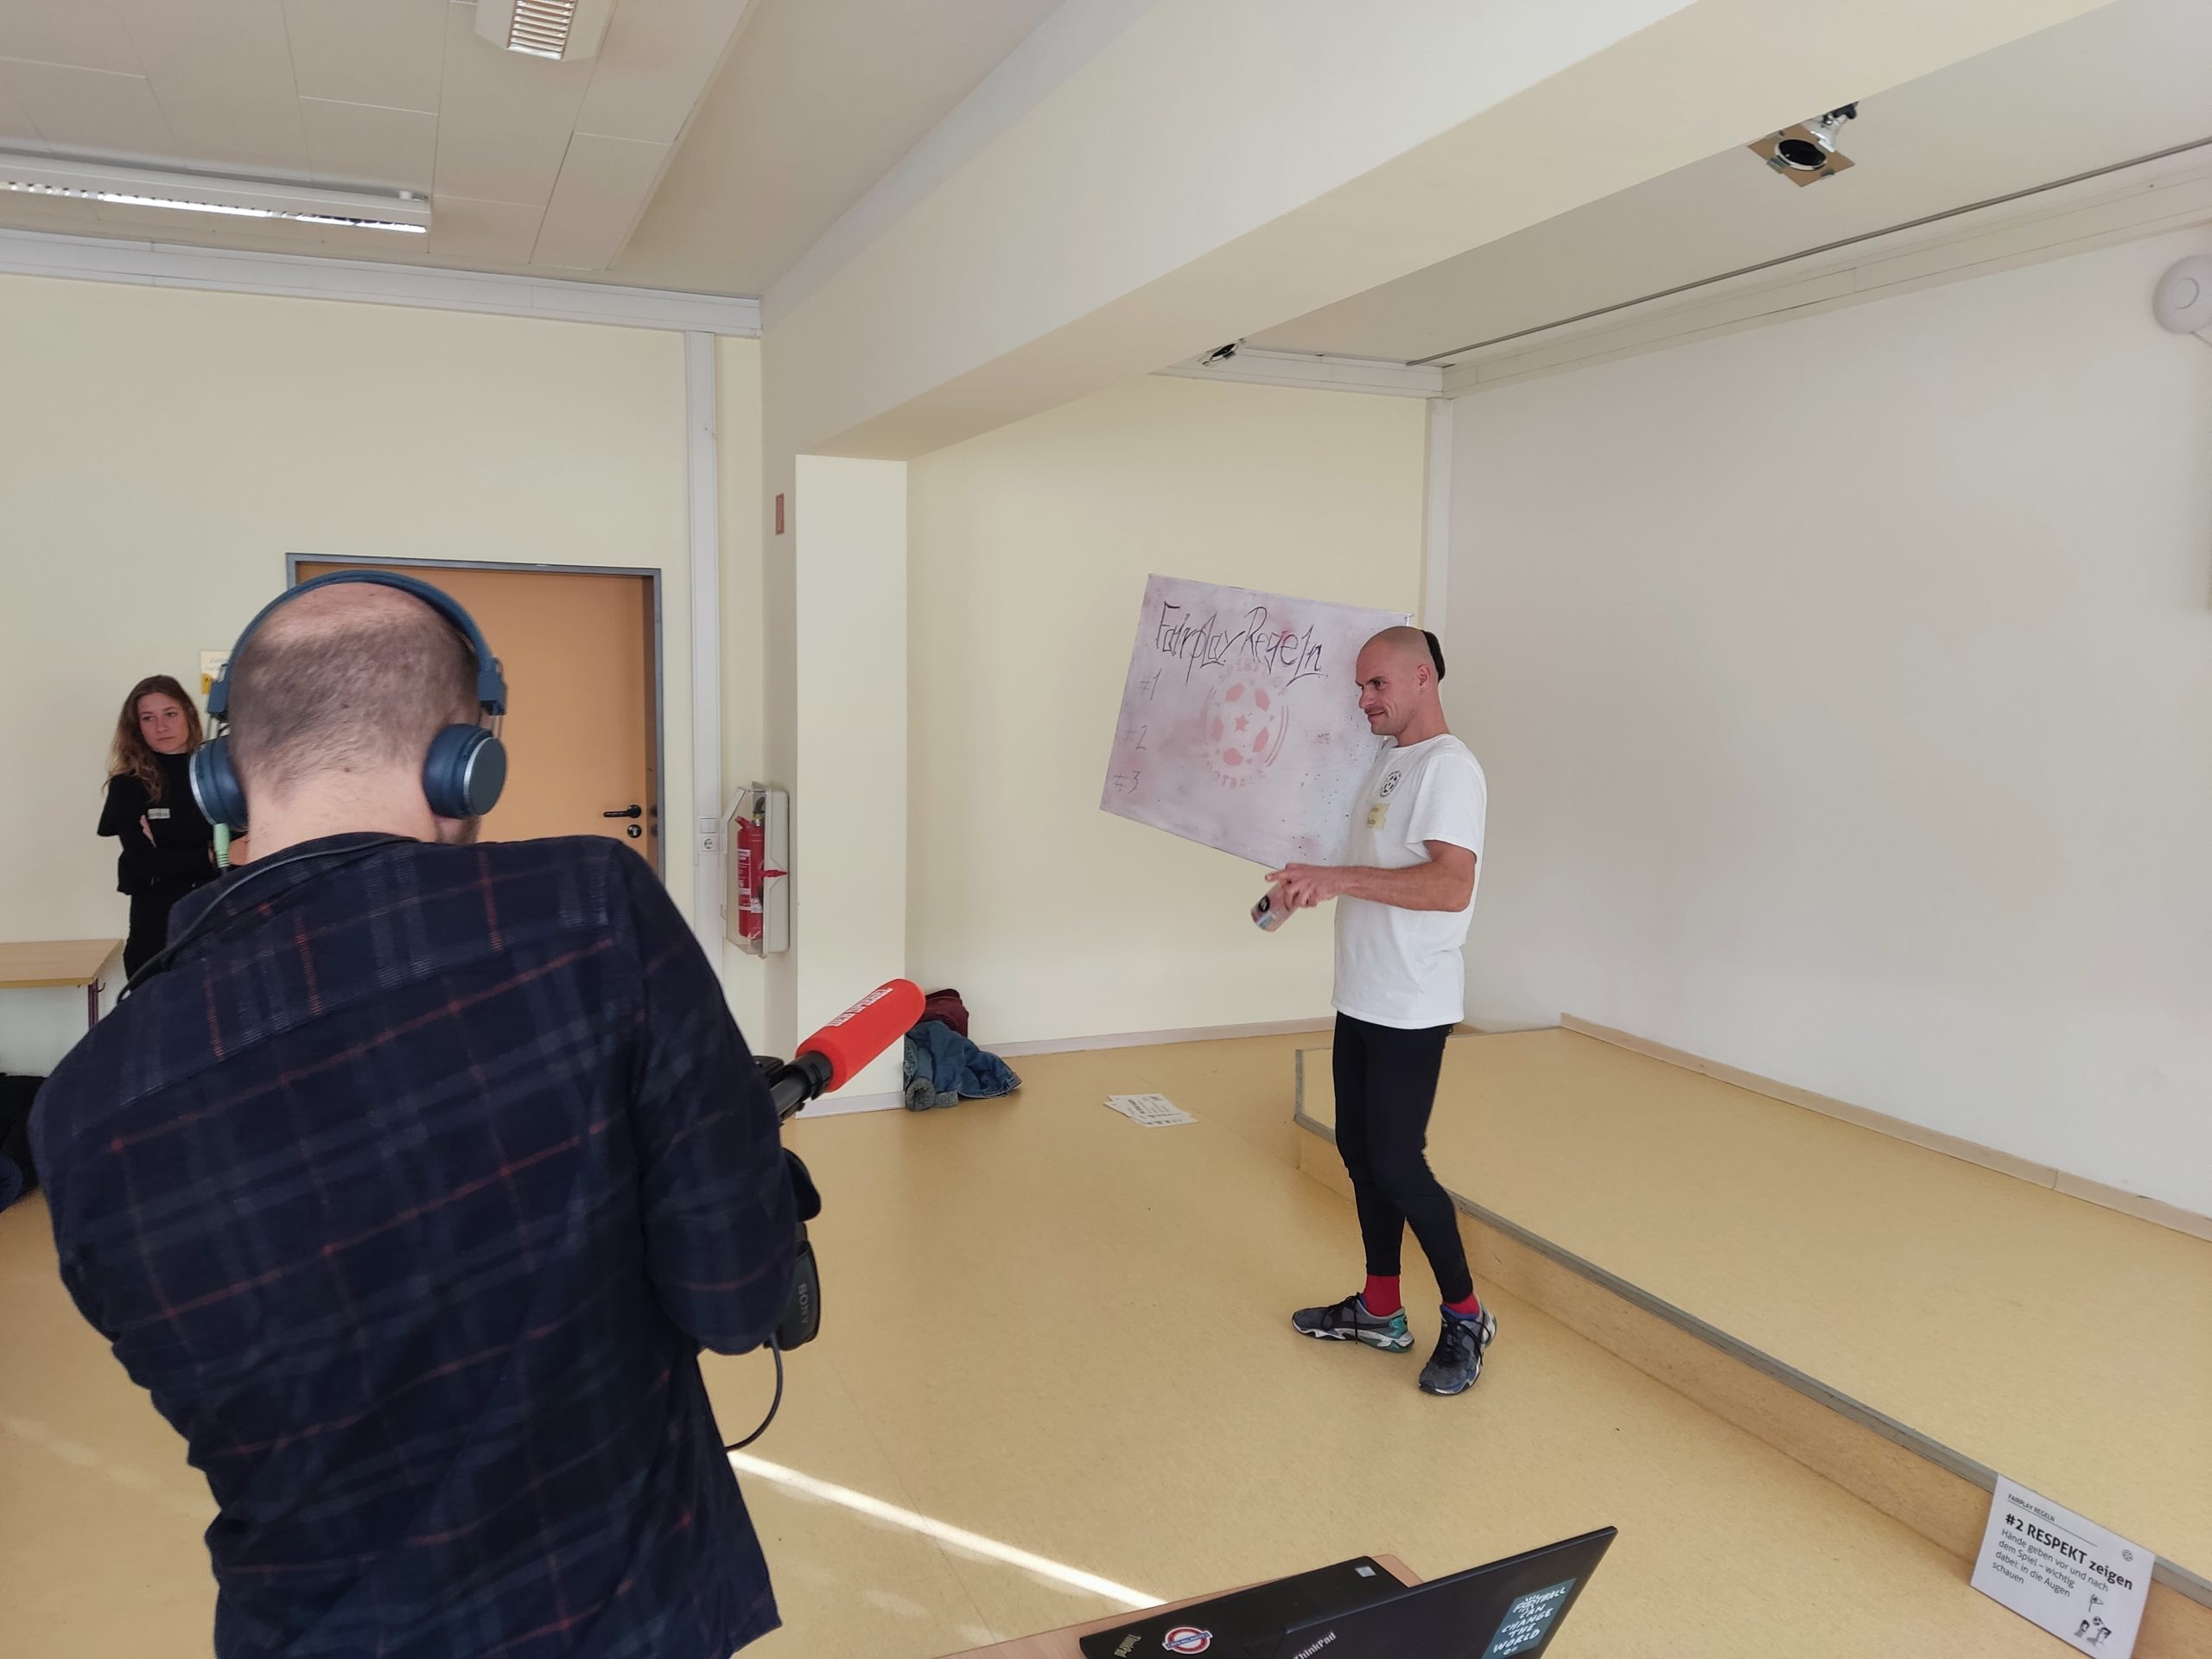 Fairplay-Coach Stützi präsentiert die Leinwand für die Klassengemeinschaft